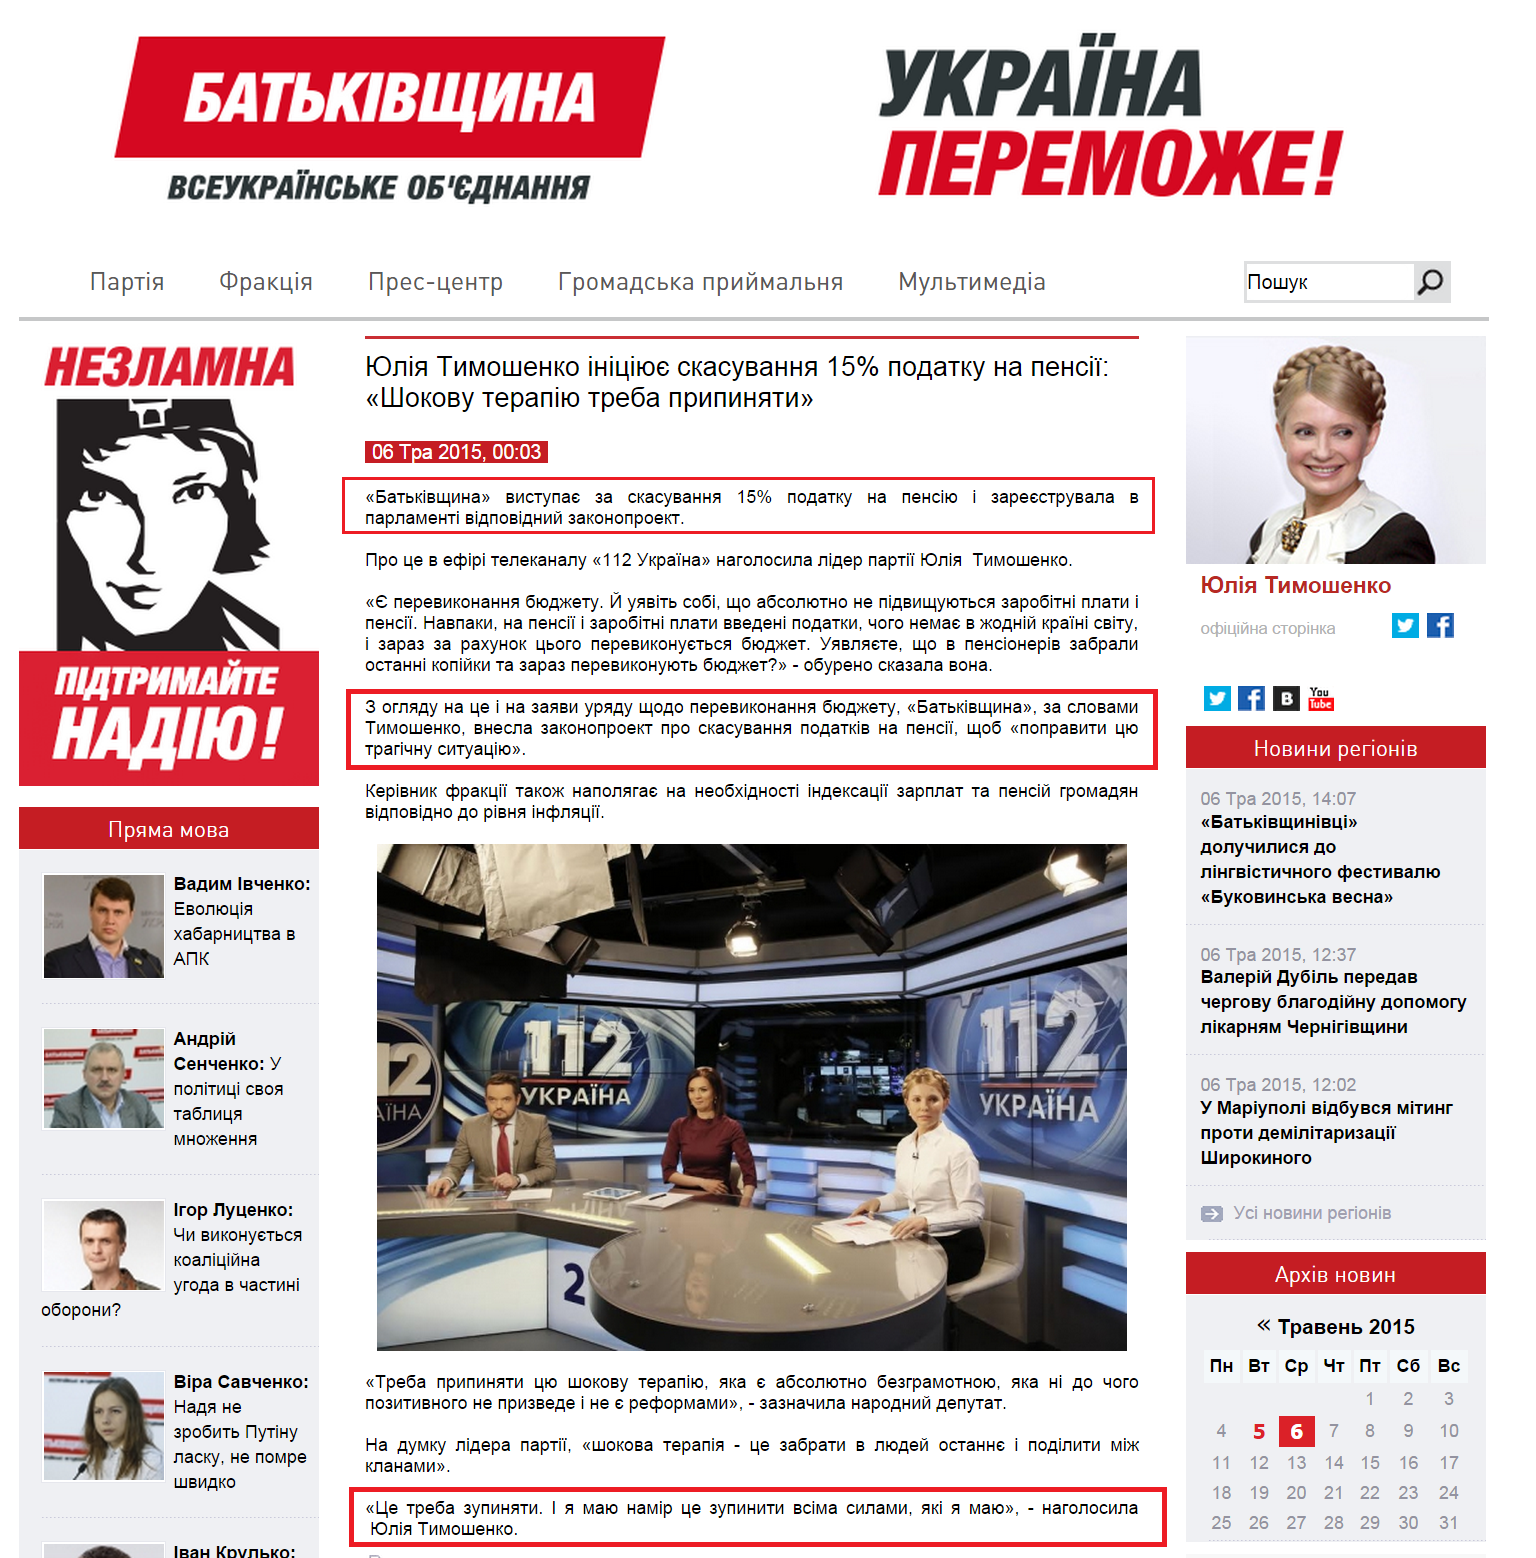 http://batkivshchyna.com.ua/news/22372.html